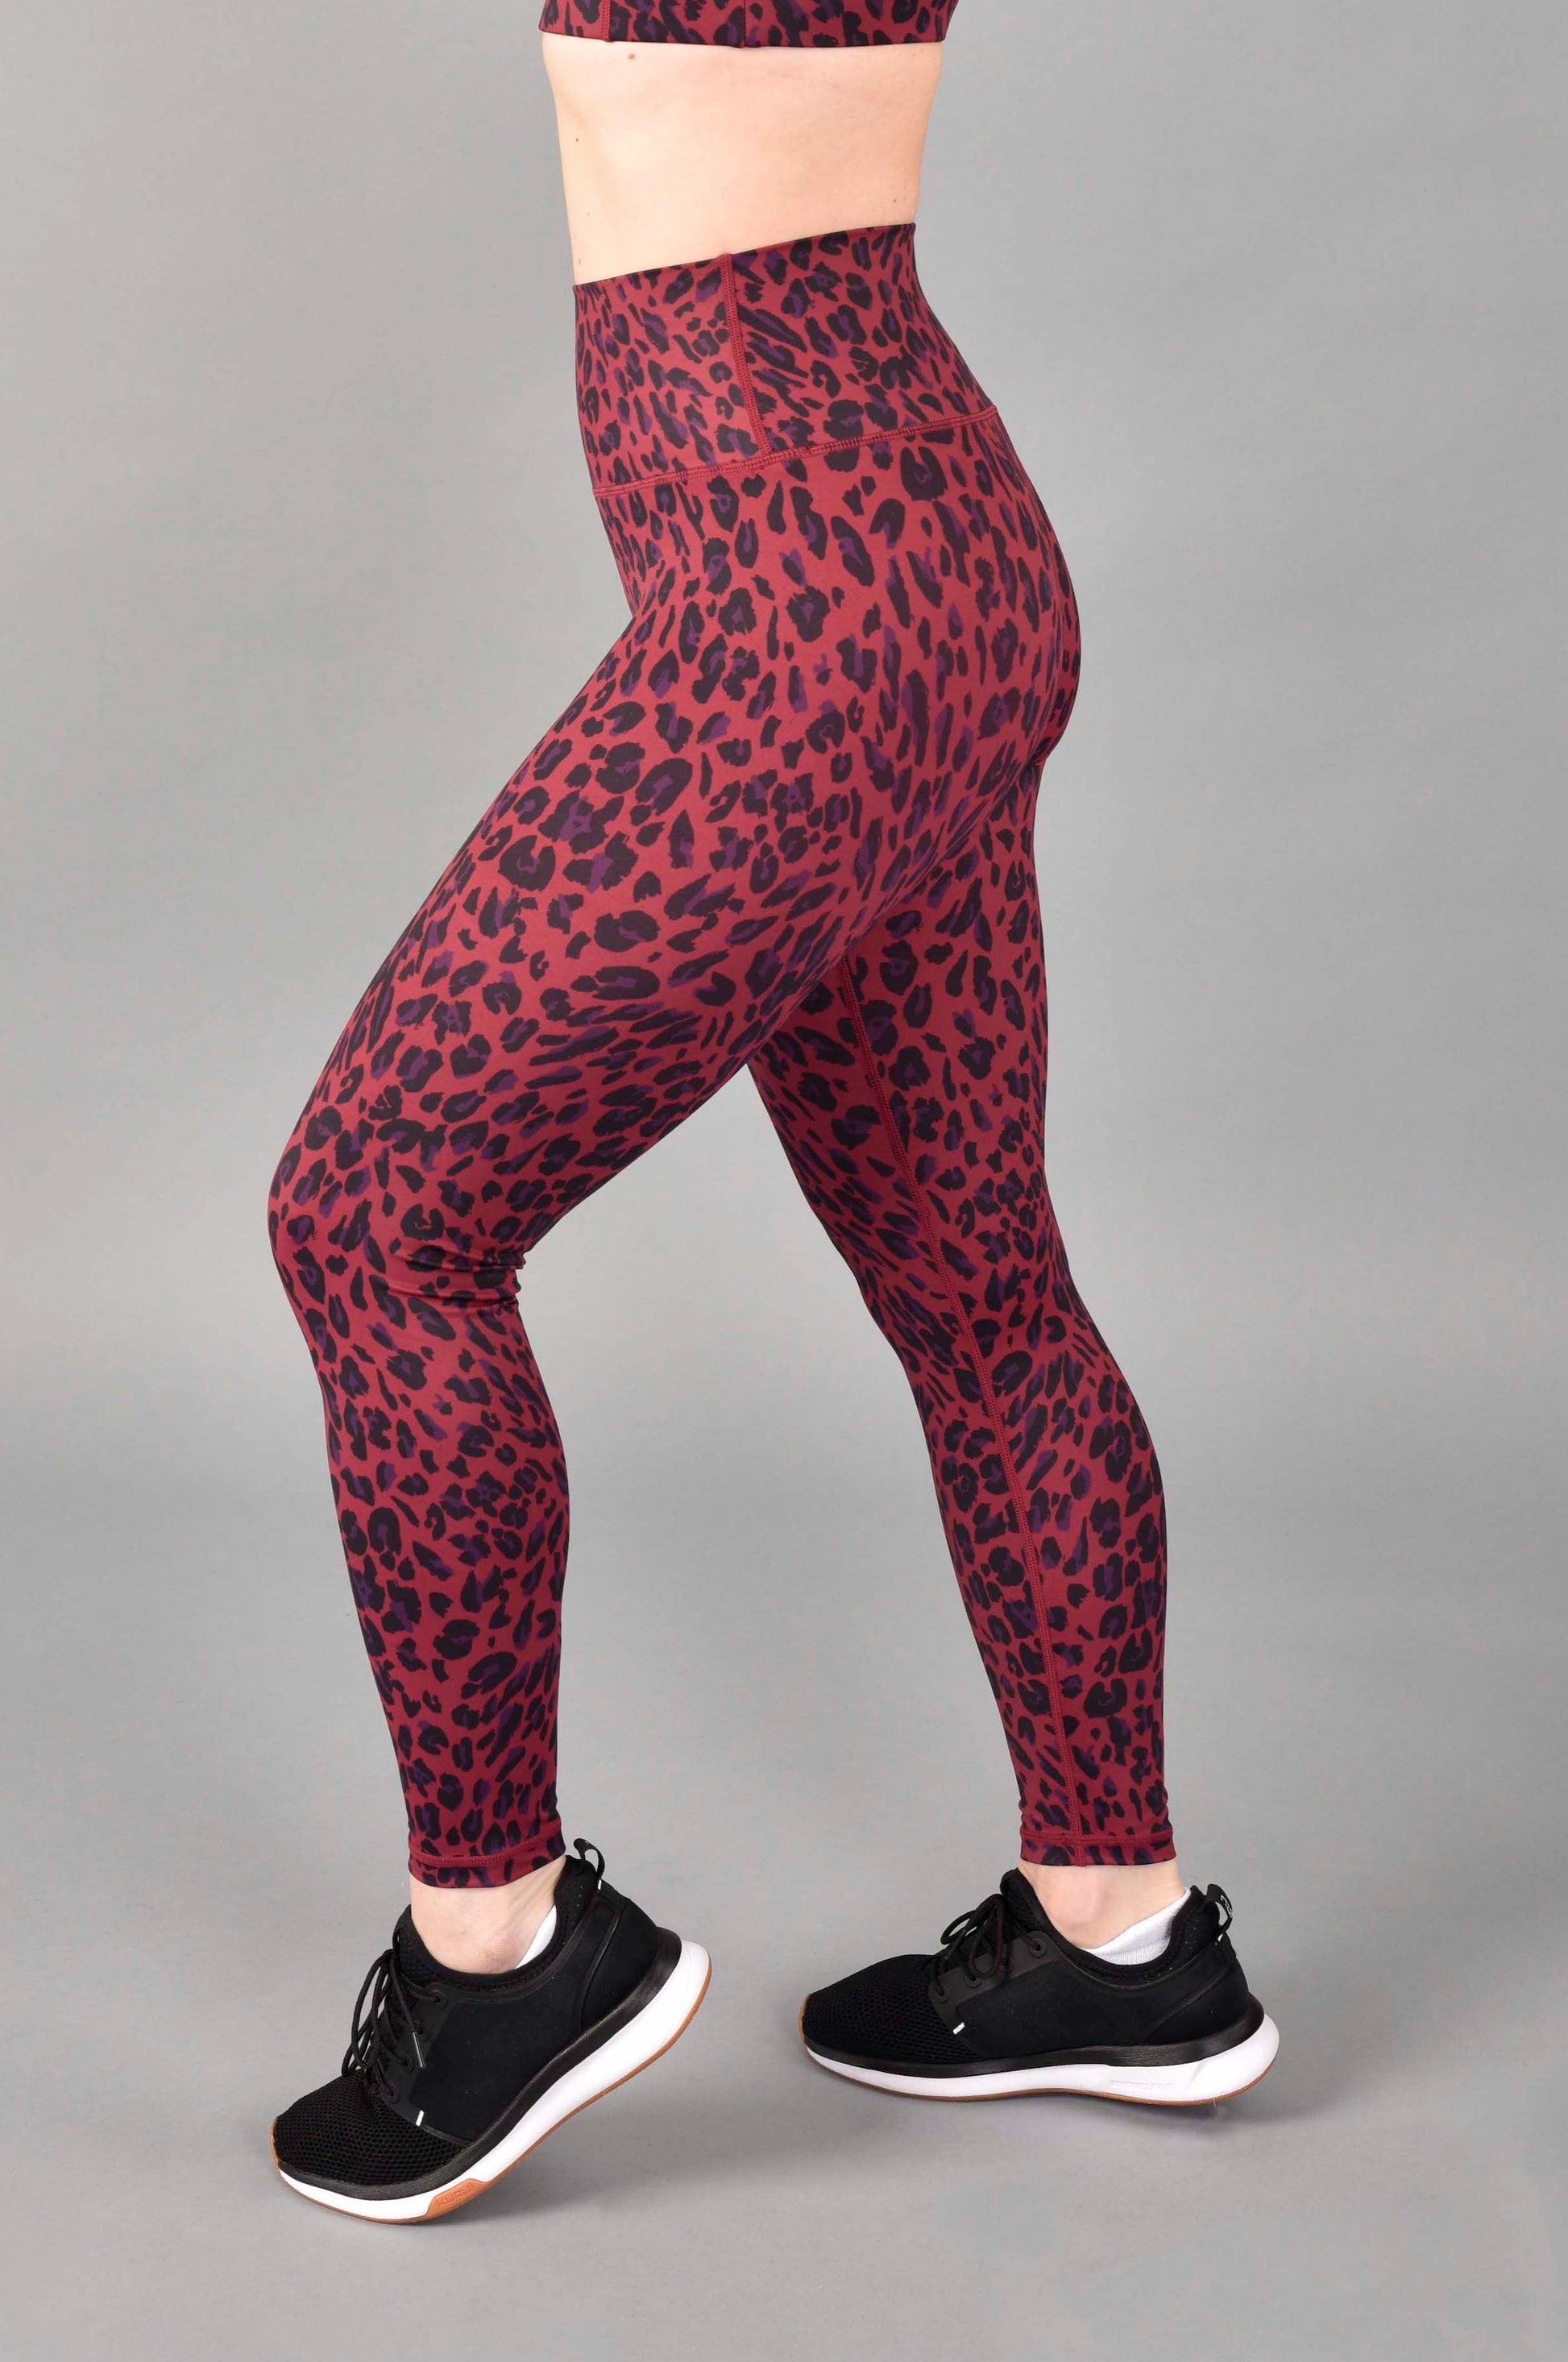 Ultra High Rise Recycled 7/8 Legging in Red Velvet Leopard